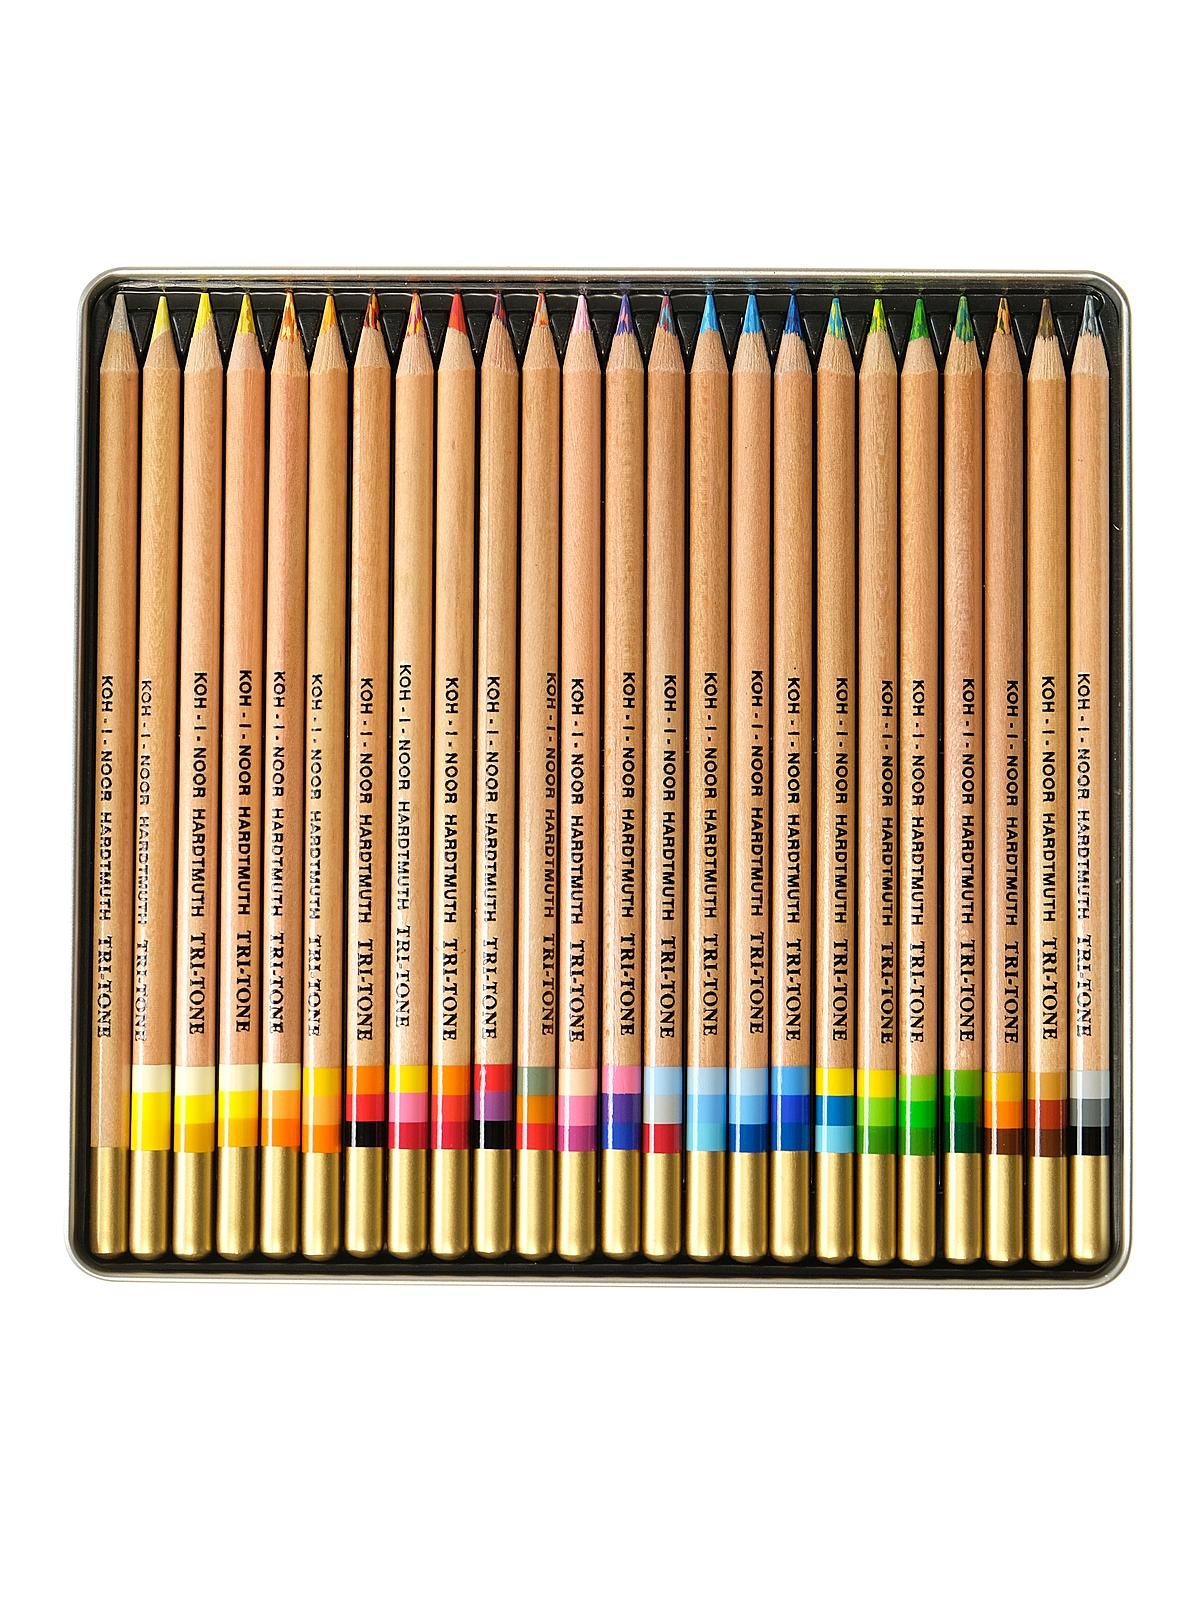 Koh-I-Noor Tri-Tone Color Pencils 12 Set